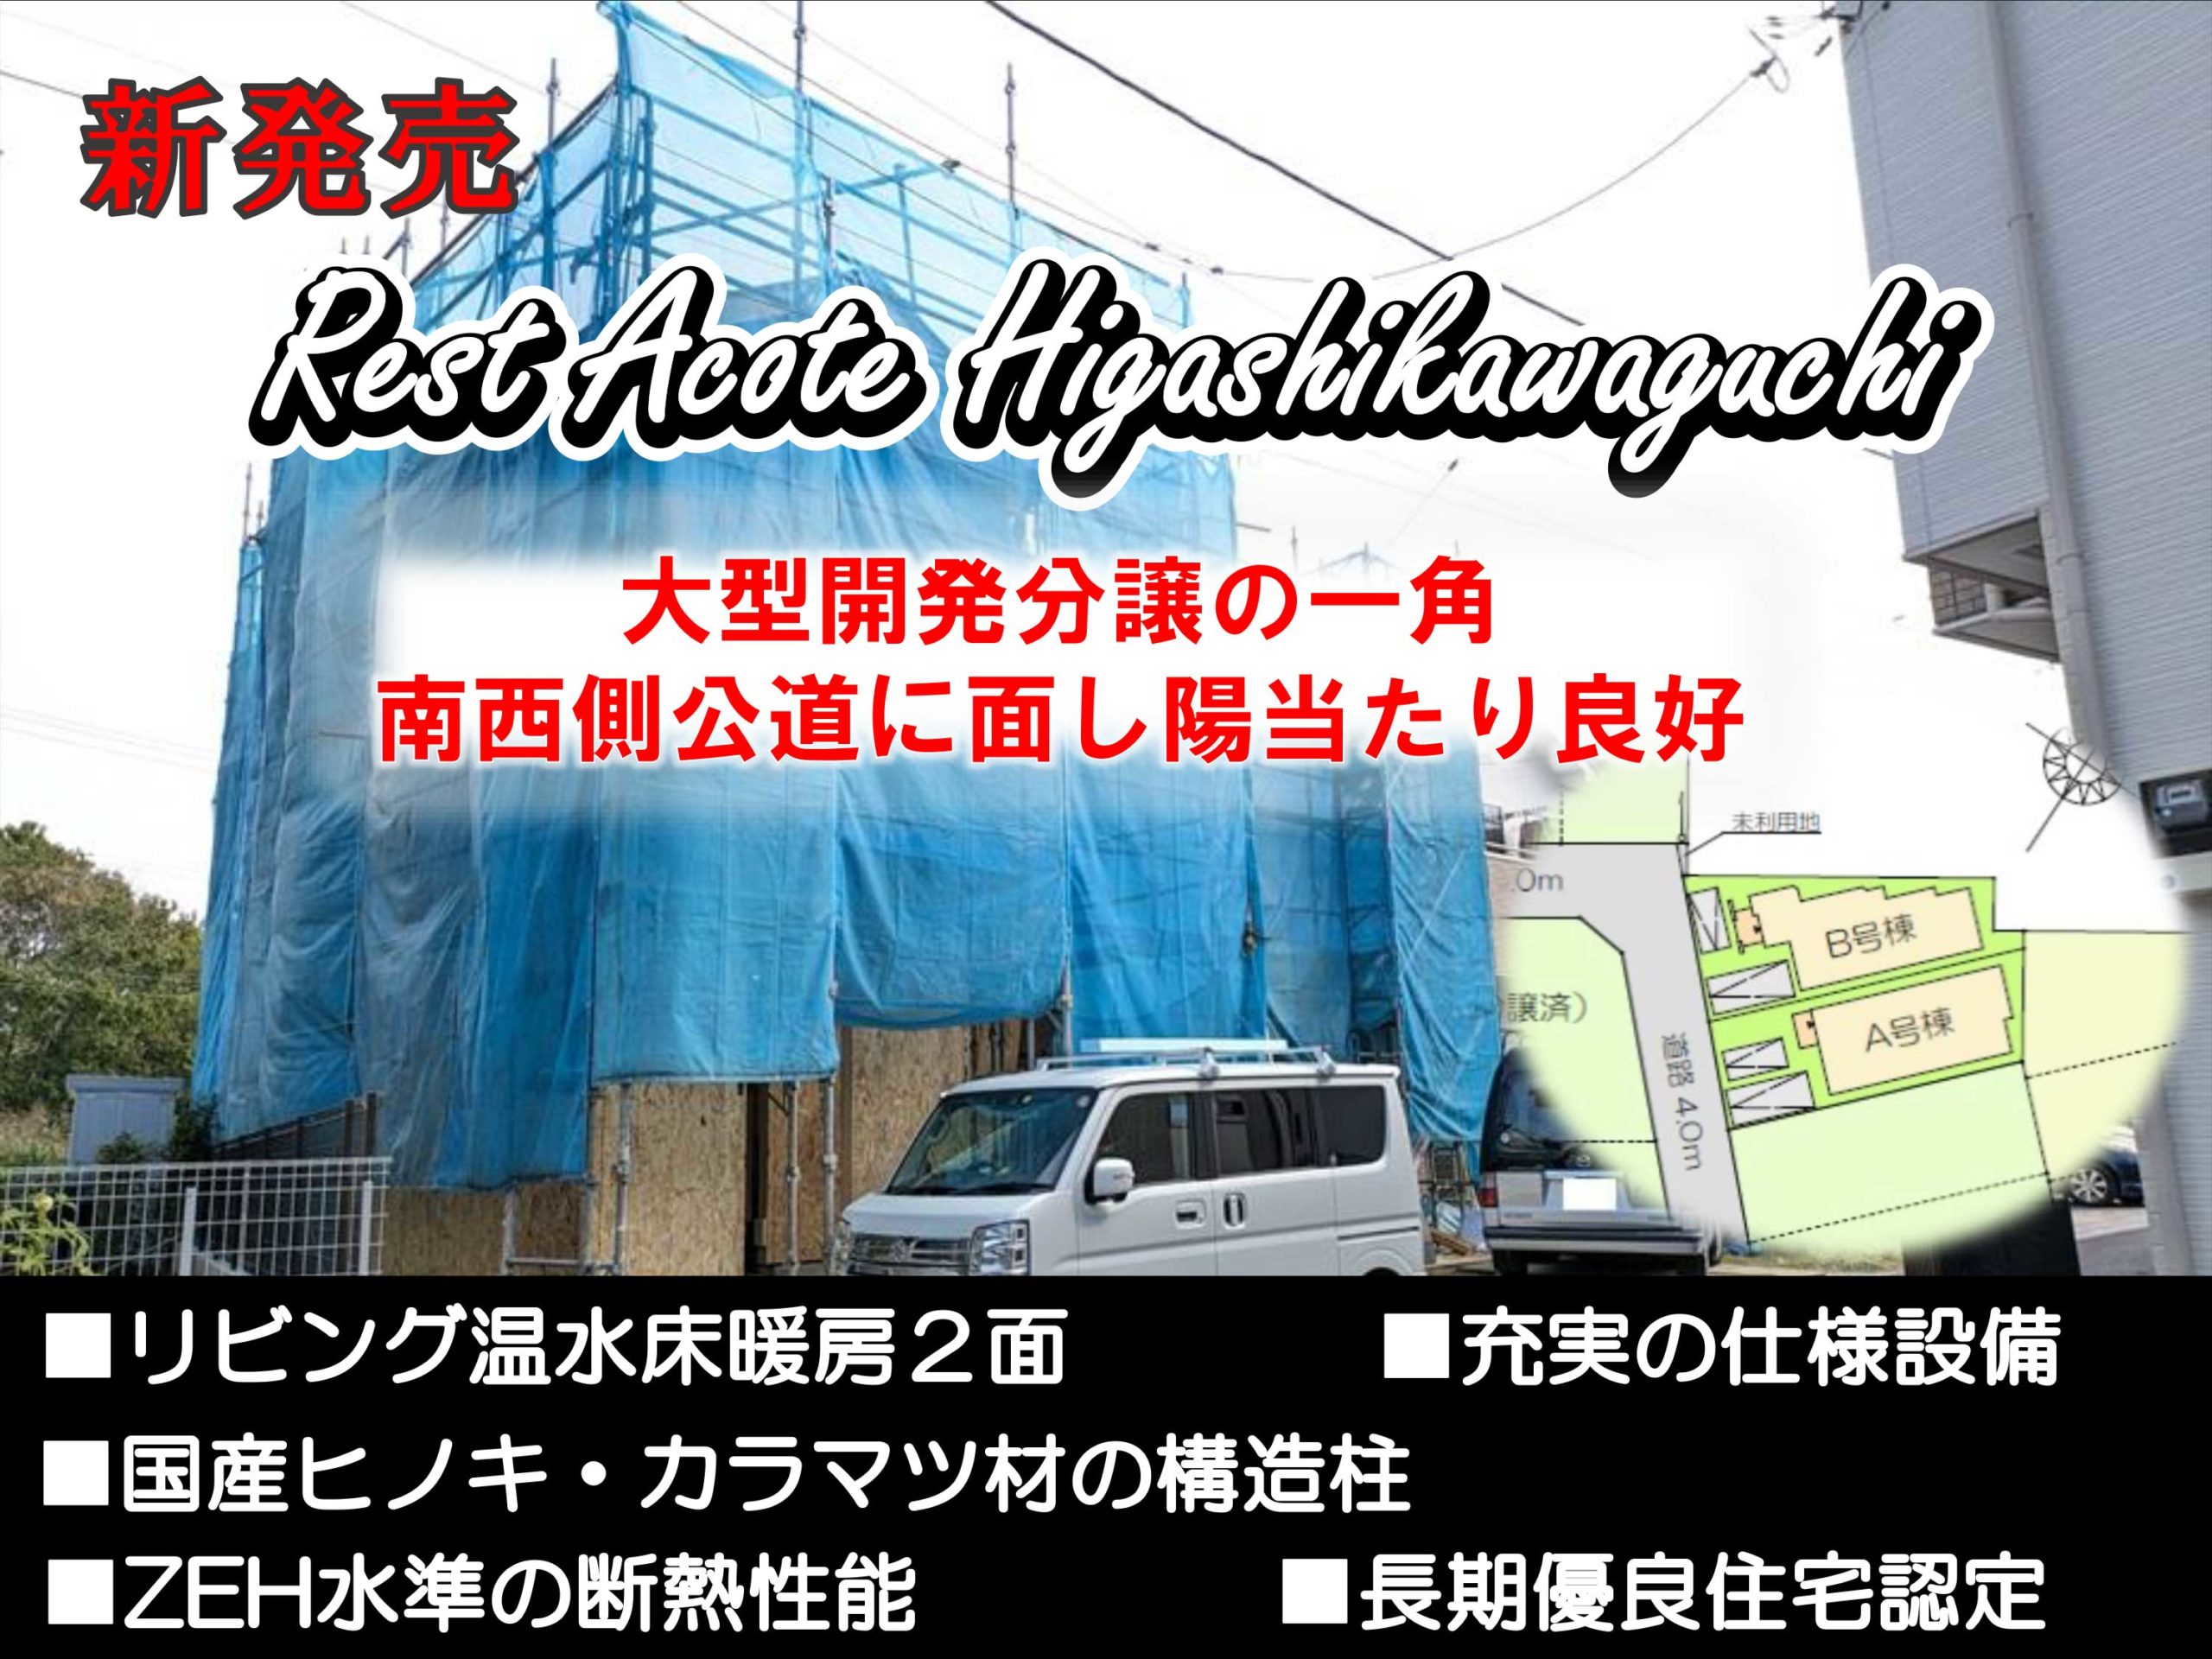 アイキャッチRest-Acote-Higashikawaguchi２